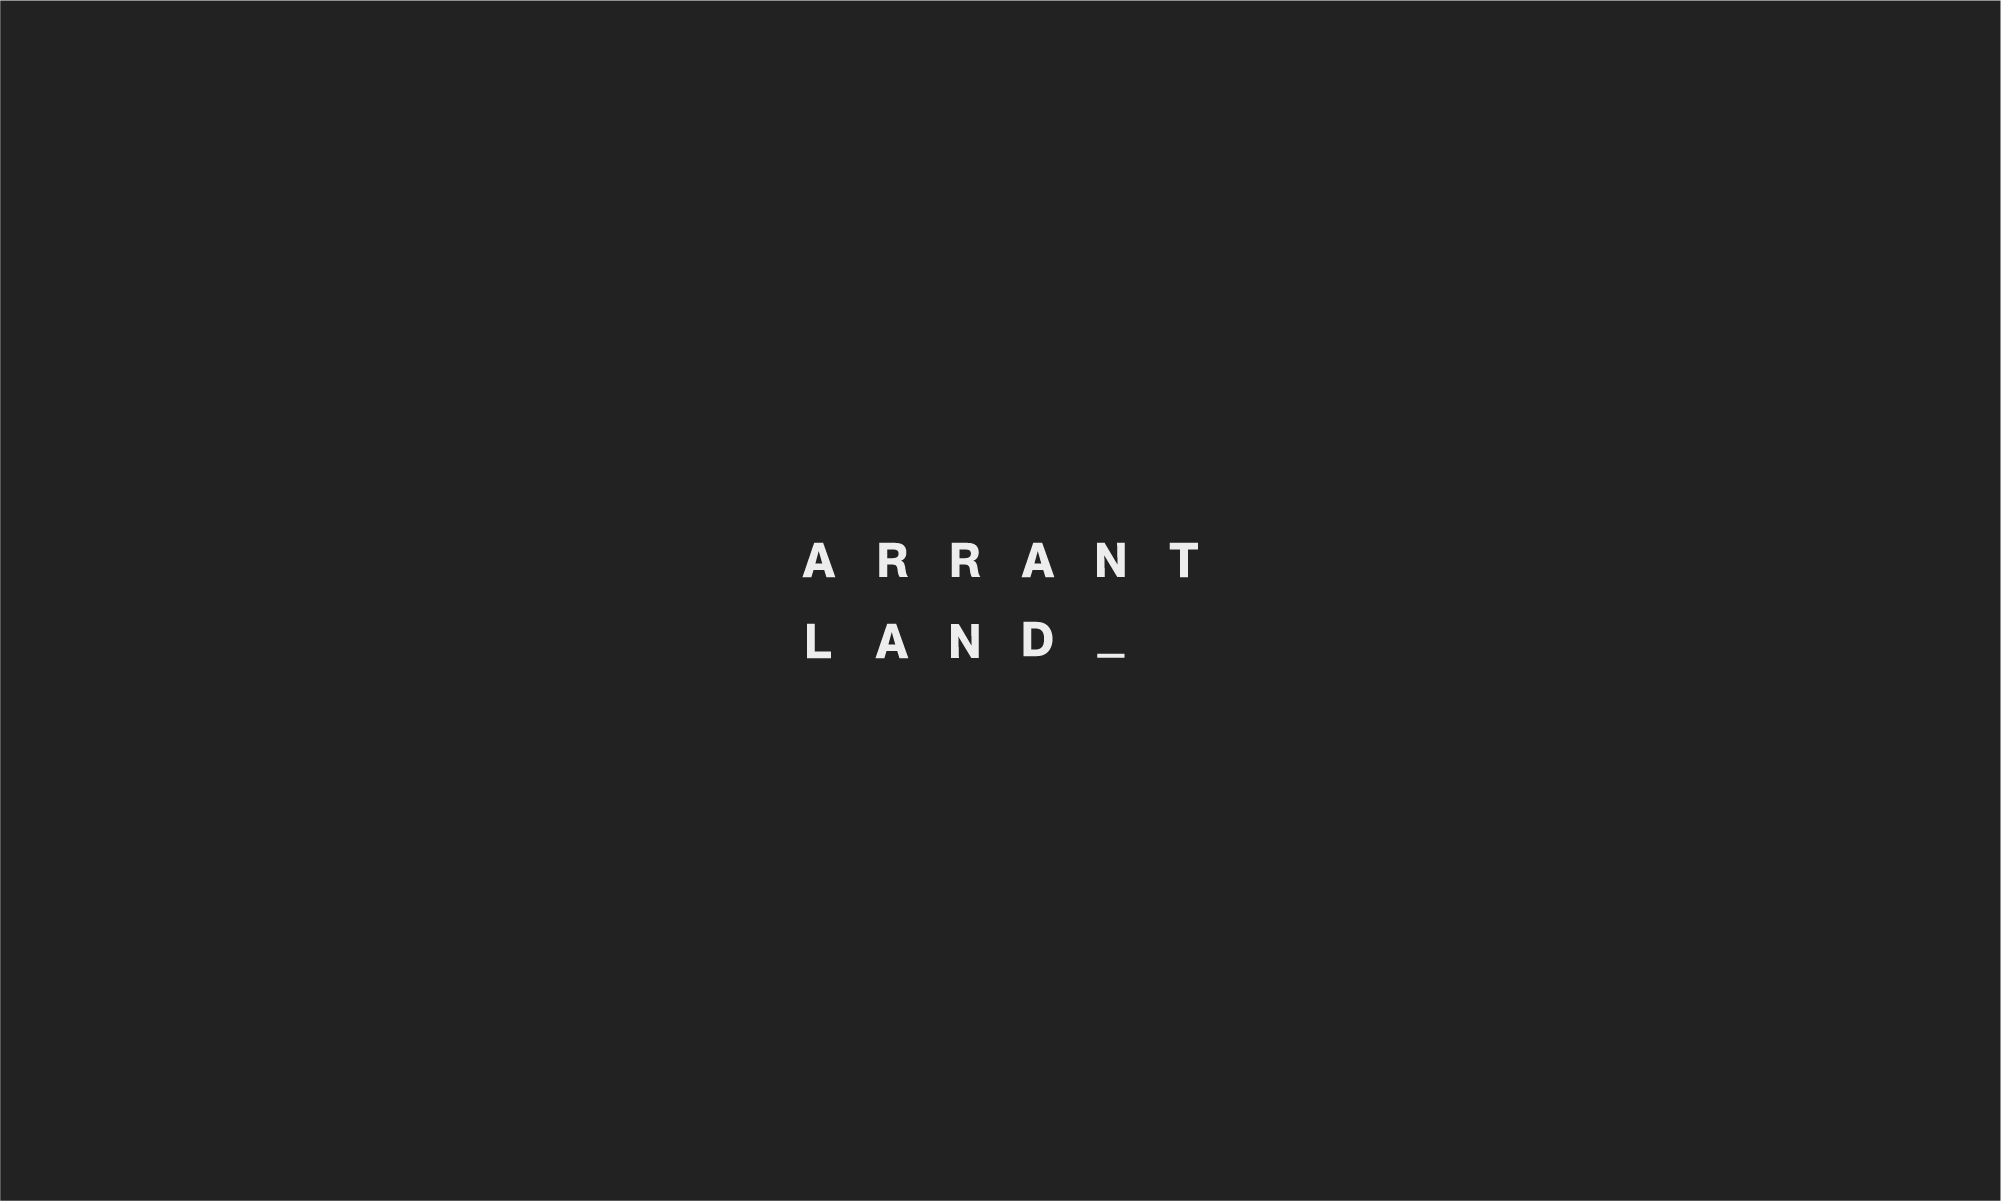 Arrant-Land-01.png